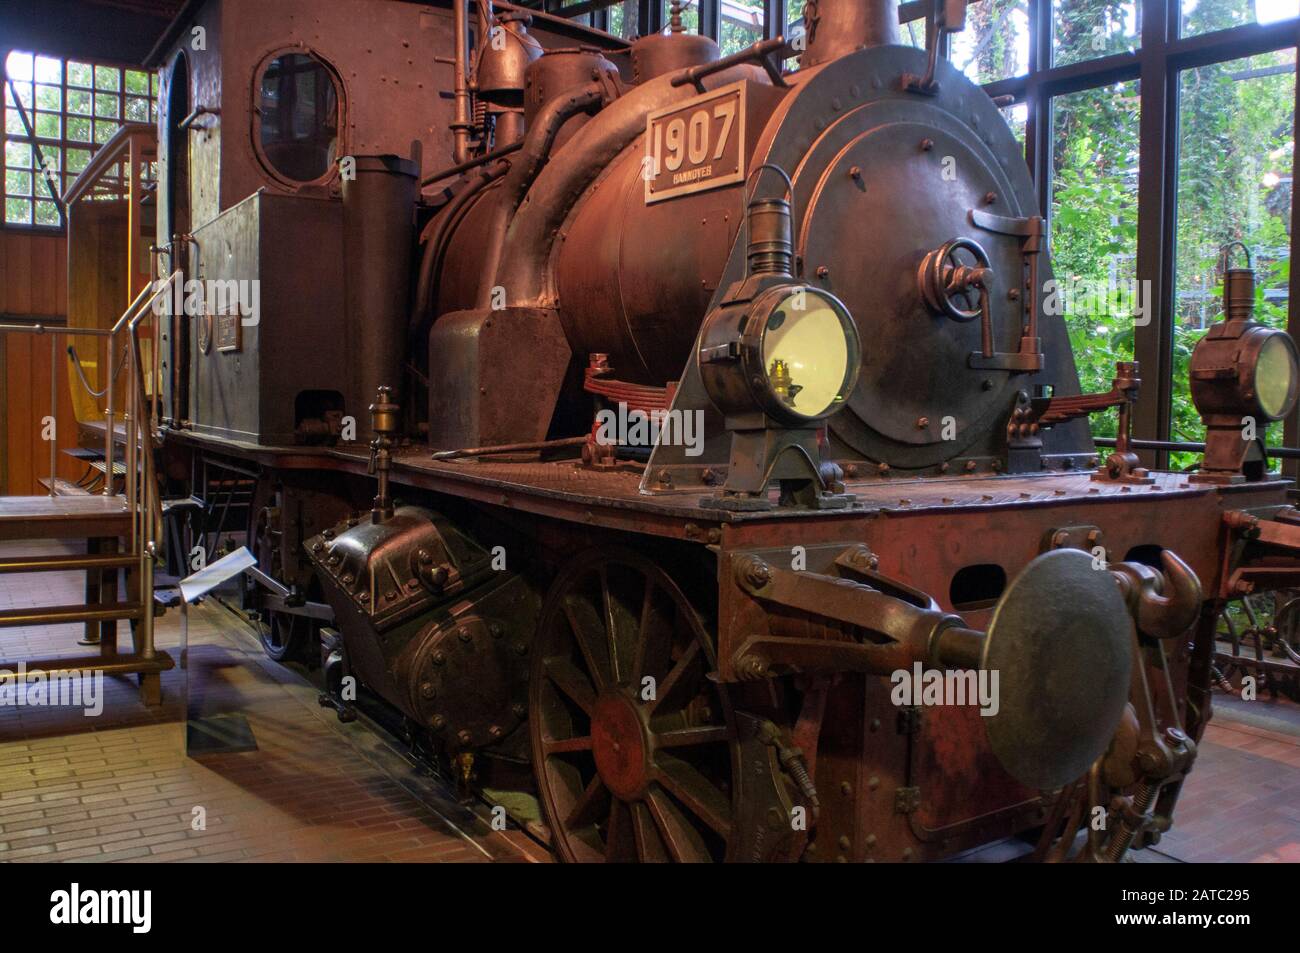 Lovcomotive vapeur exposée au Deutsches Technikmuseum, Musée allemand de la technologie, à Berlin, Allemagne Banque D'Images